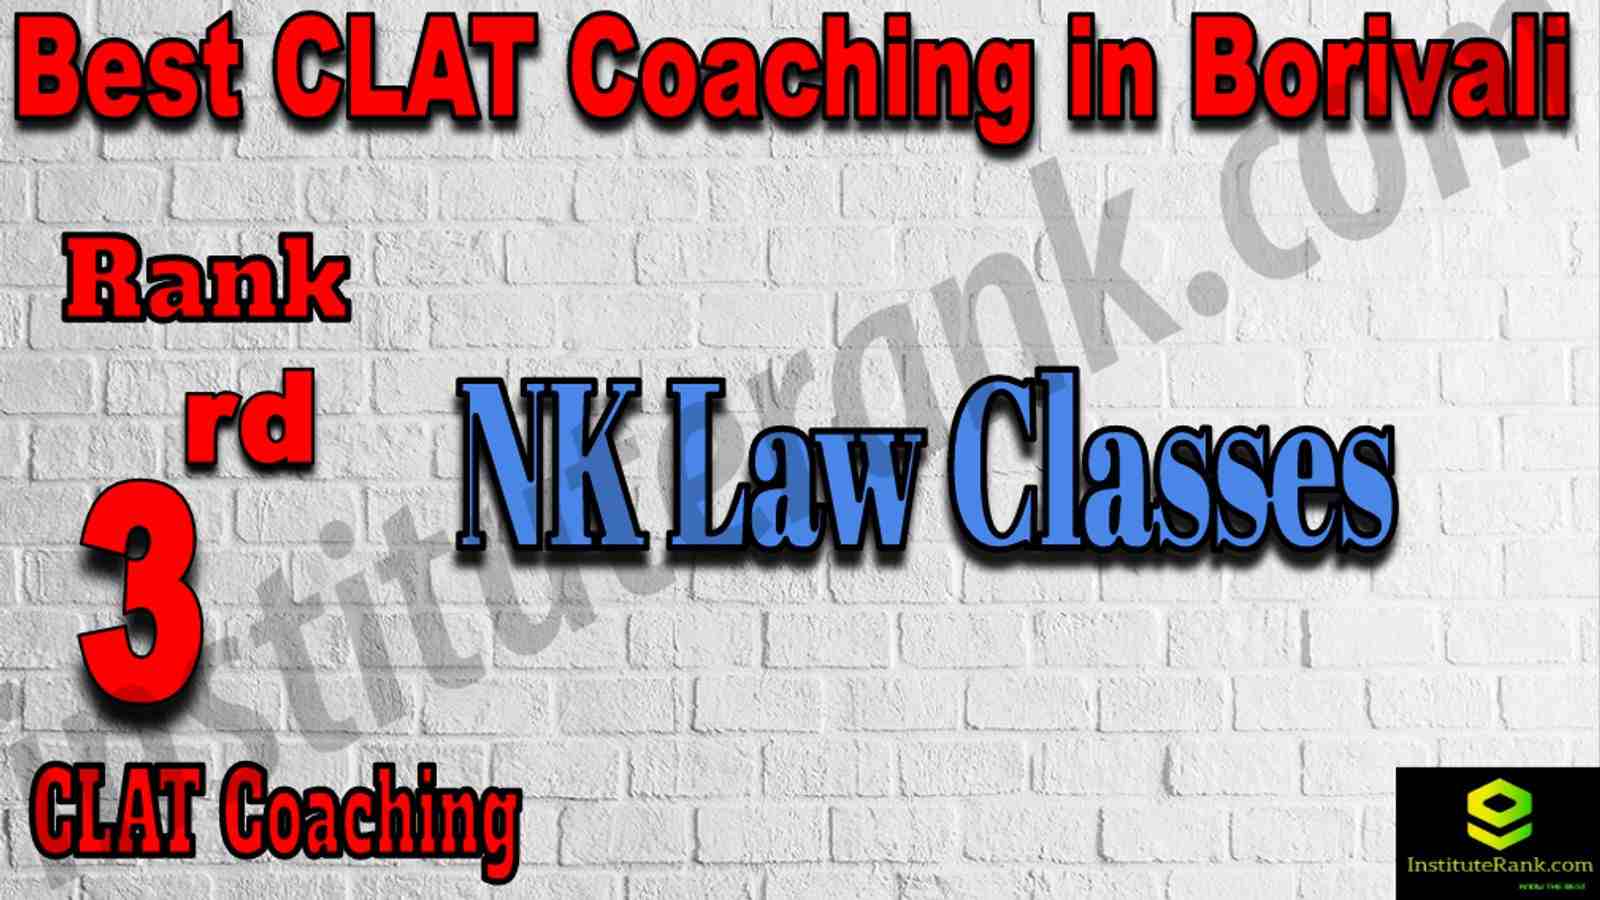 3rd Best CLAT Coaching in Borivali